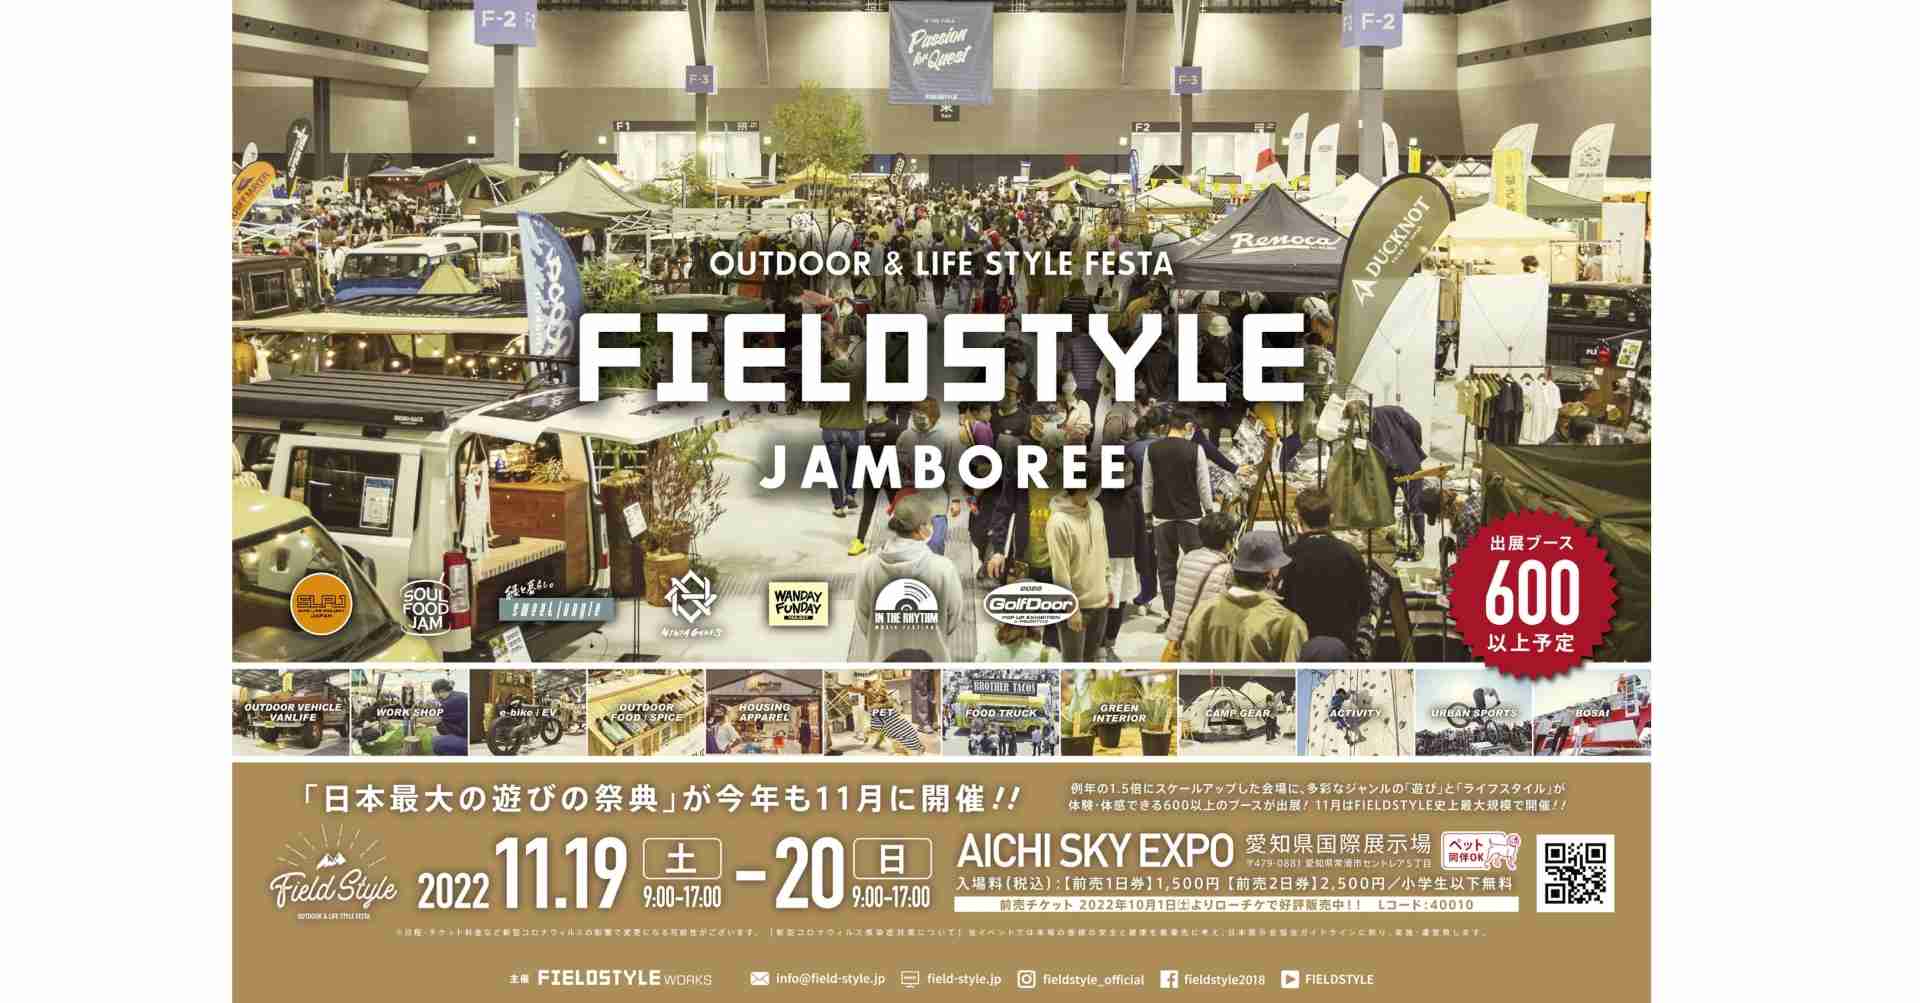 【イベント情報】FIELD STYLE JAMBOREE 2022(11/19~20)に出展します。